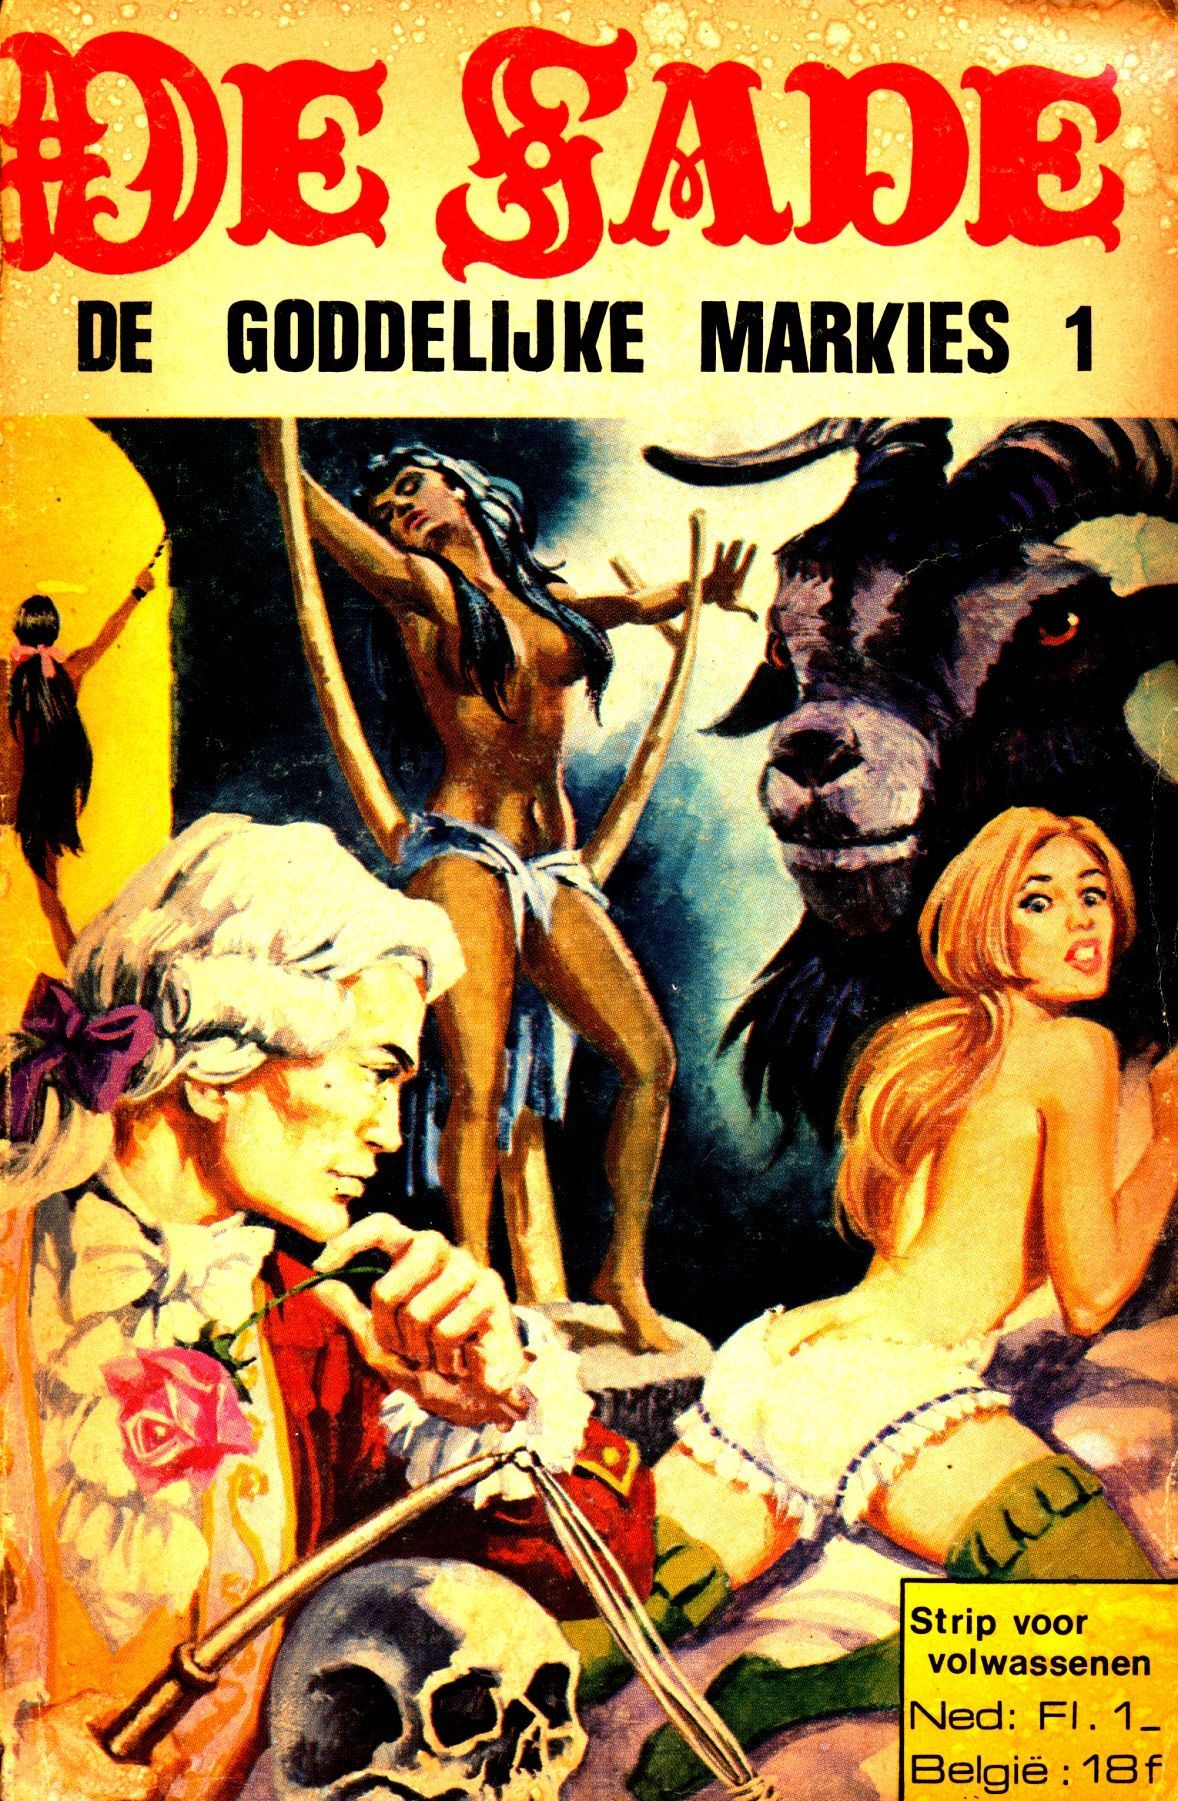 De Goddelijke Markies (Dutch) In 5 series...53 Nog niet geplaatste strips uit de "De Sade" serie 1